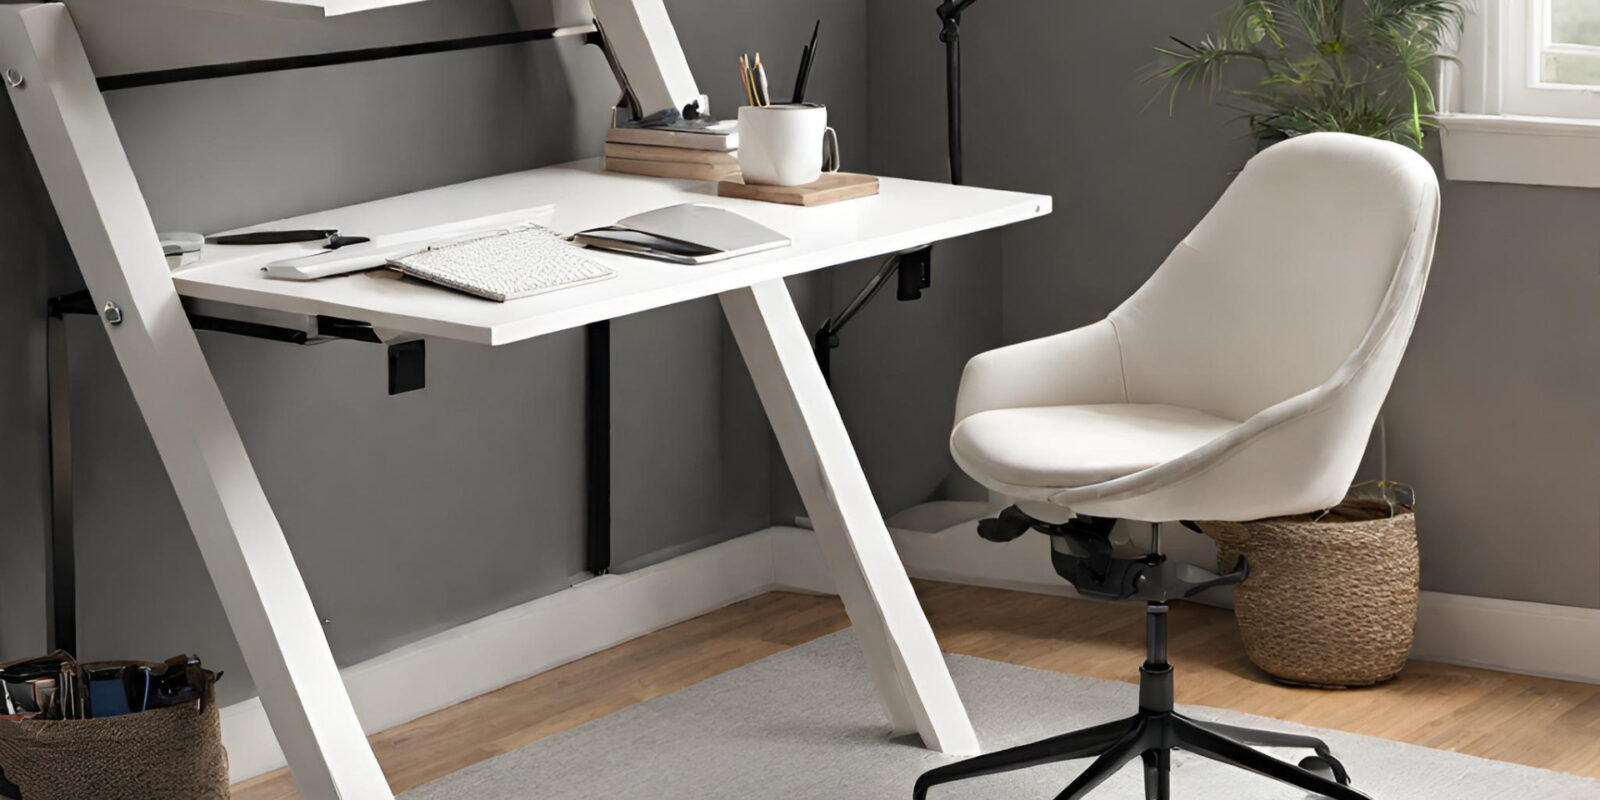 Platzsparender klappbarer Schreibtisch: